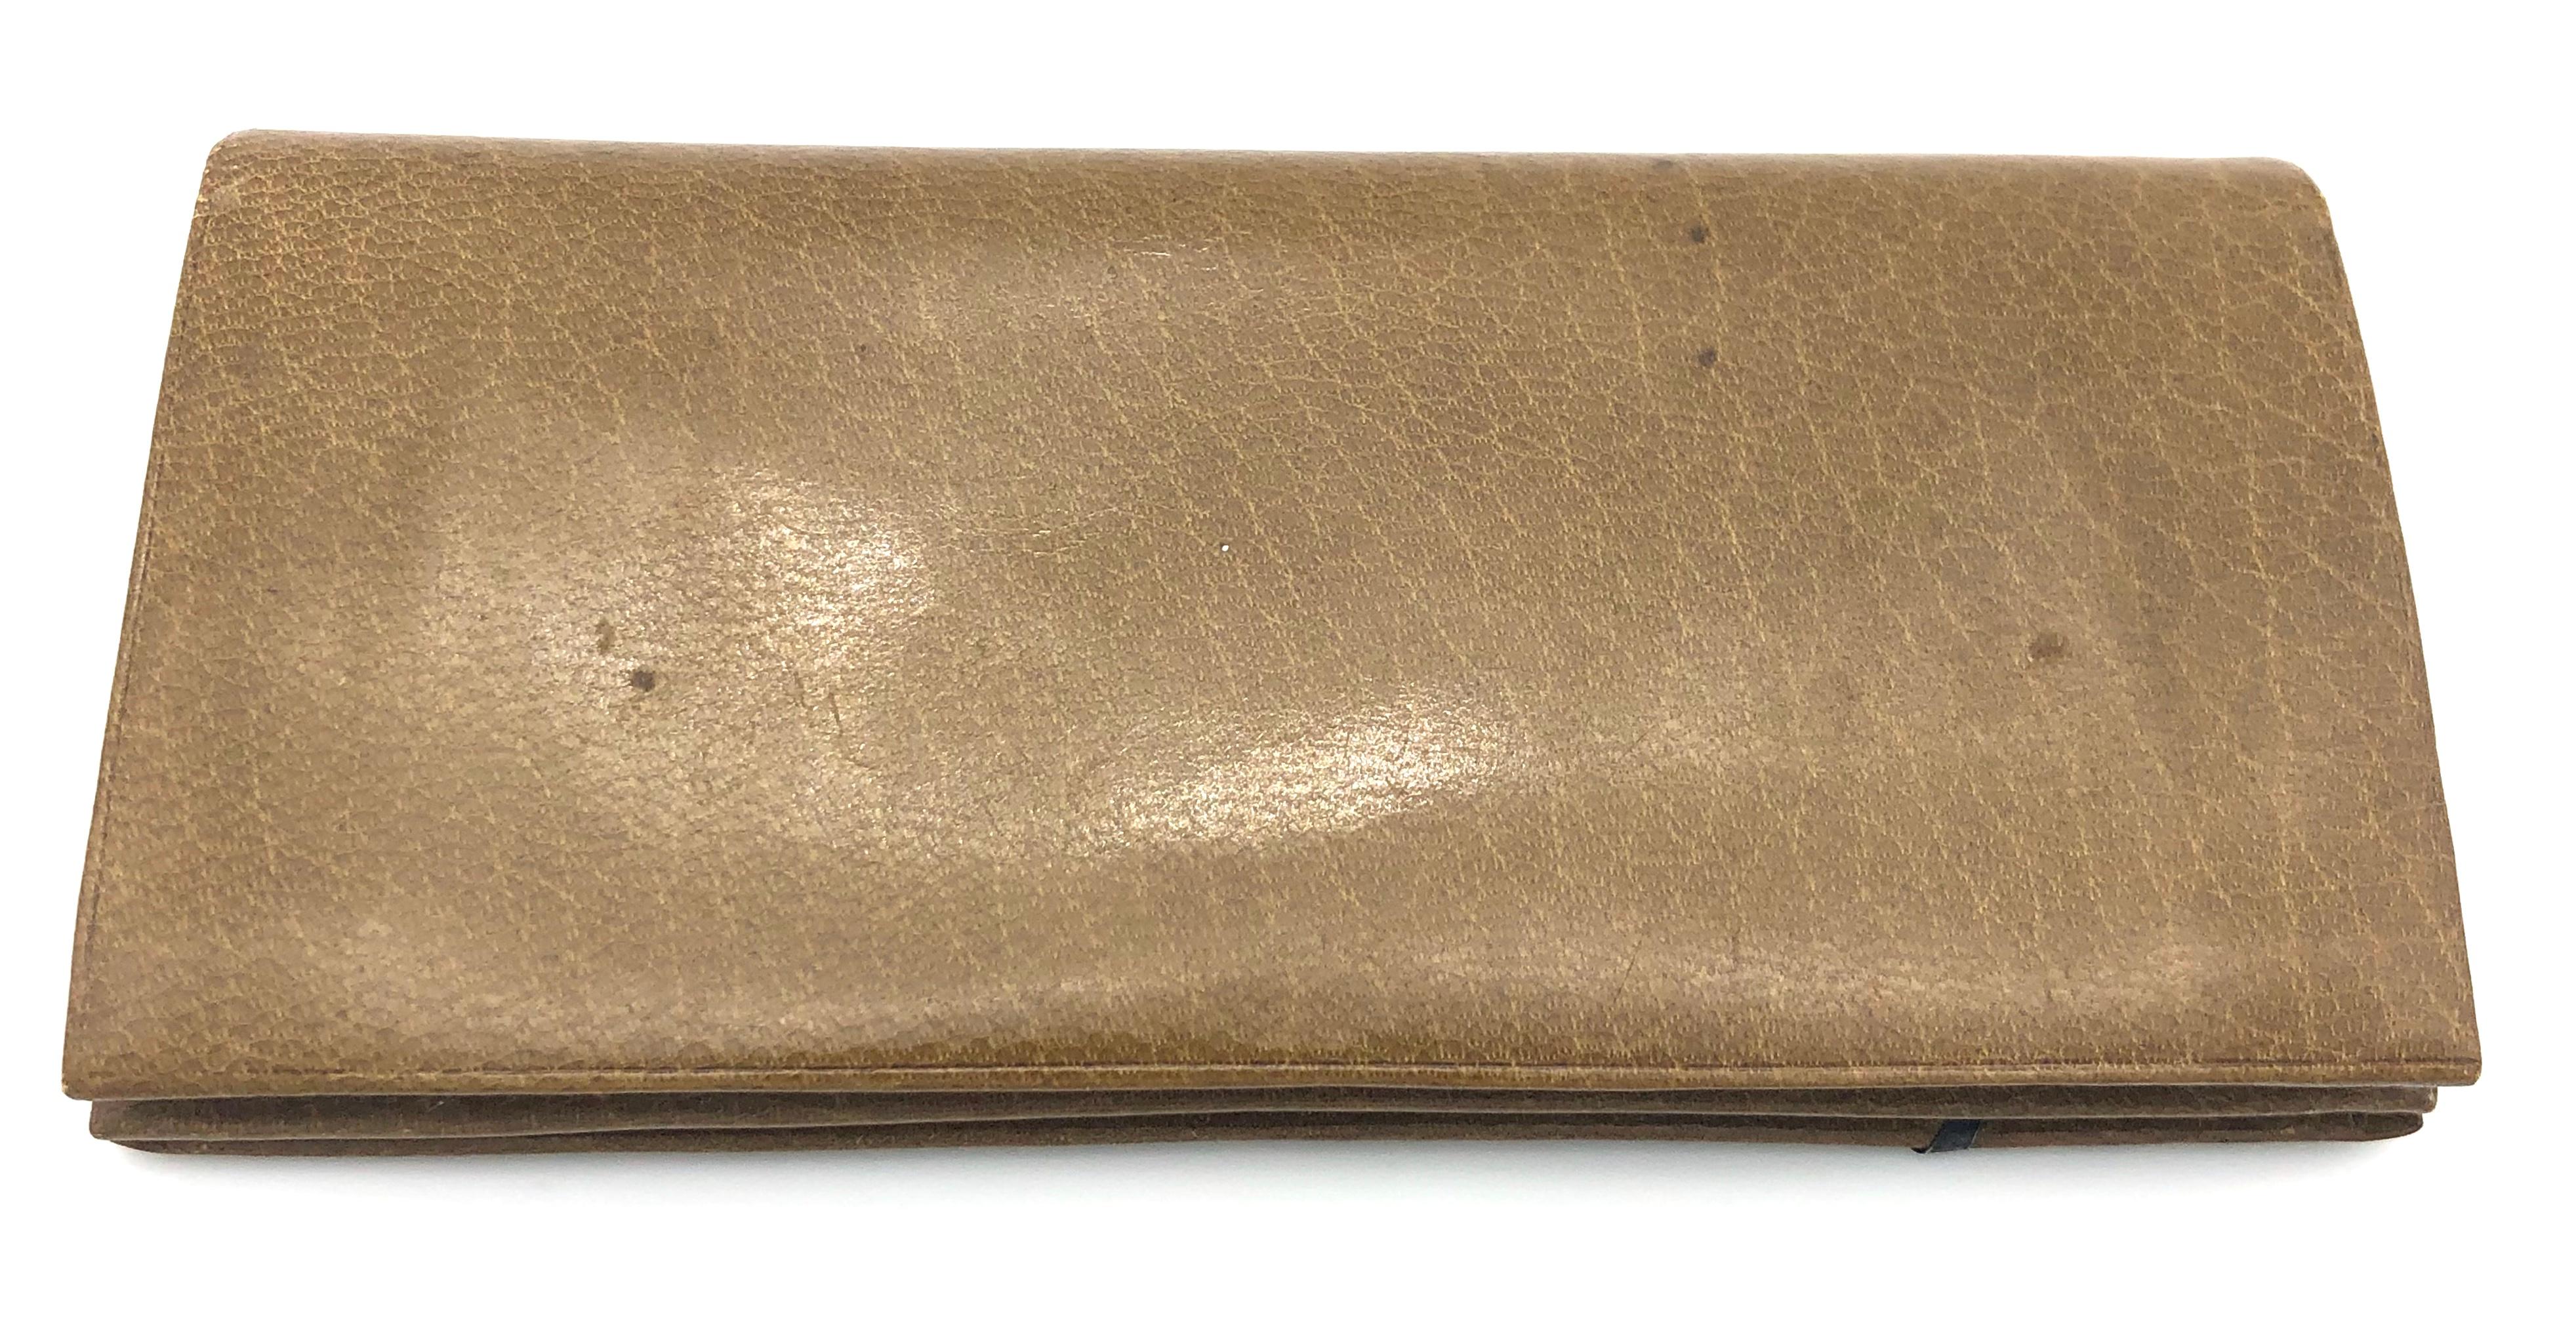 Antike beigefarbene Kalbsleder-Brieftasche mit Klappe im Querformat, verziert mit einem silbernen Stechpalmenblatt. Sie verfügt über ein Münzfach mit Schnallenverschluss sowie über Scheinfächer. Sie ist mit der Prägung 